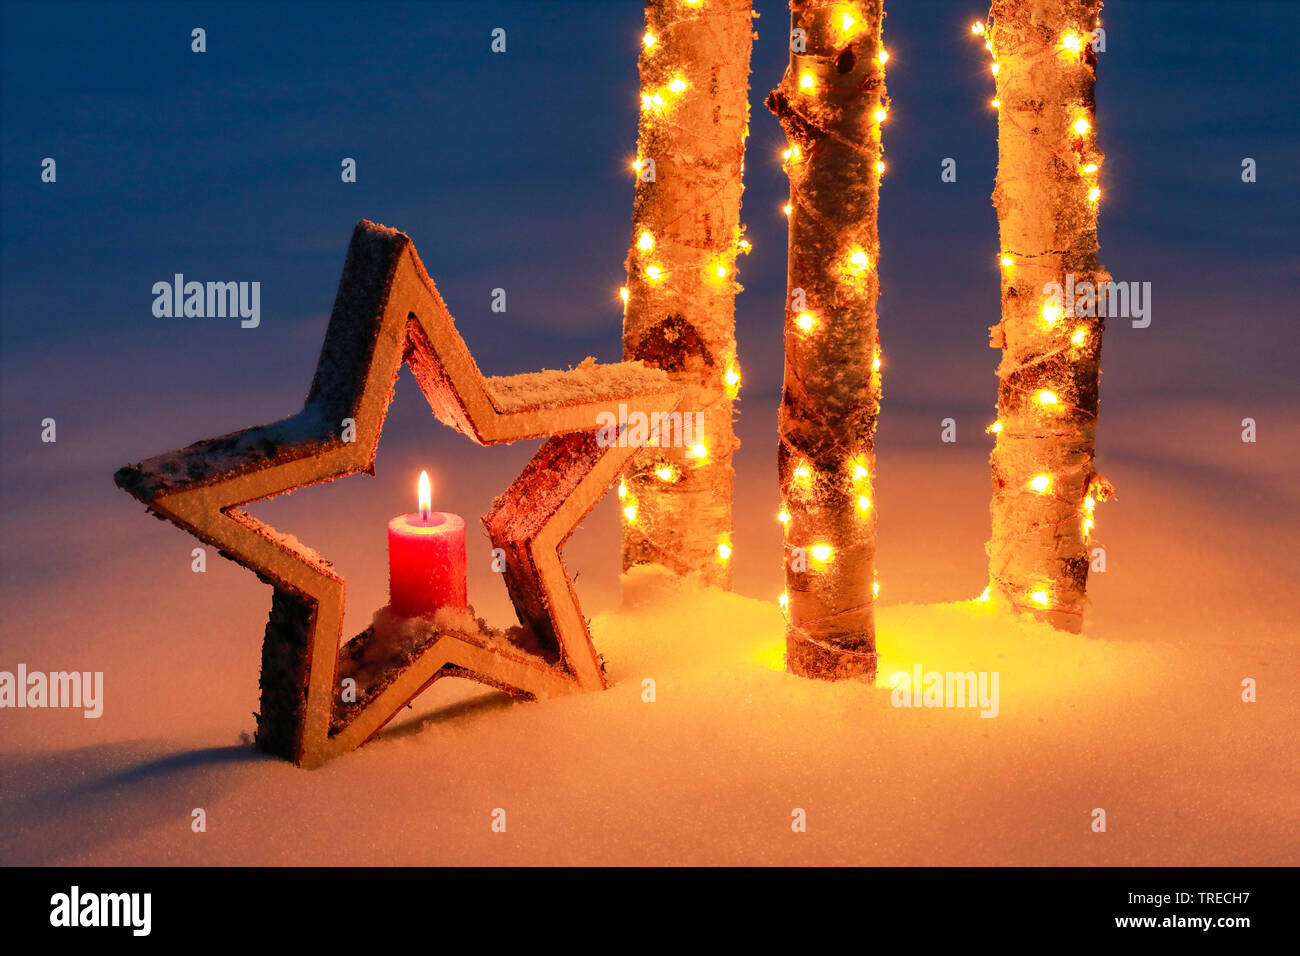 La stella di legno e illuminato in tronchi di betulla in snow, Svizzera Foto Stock